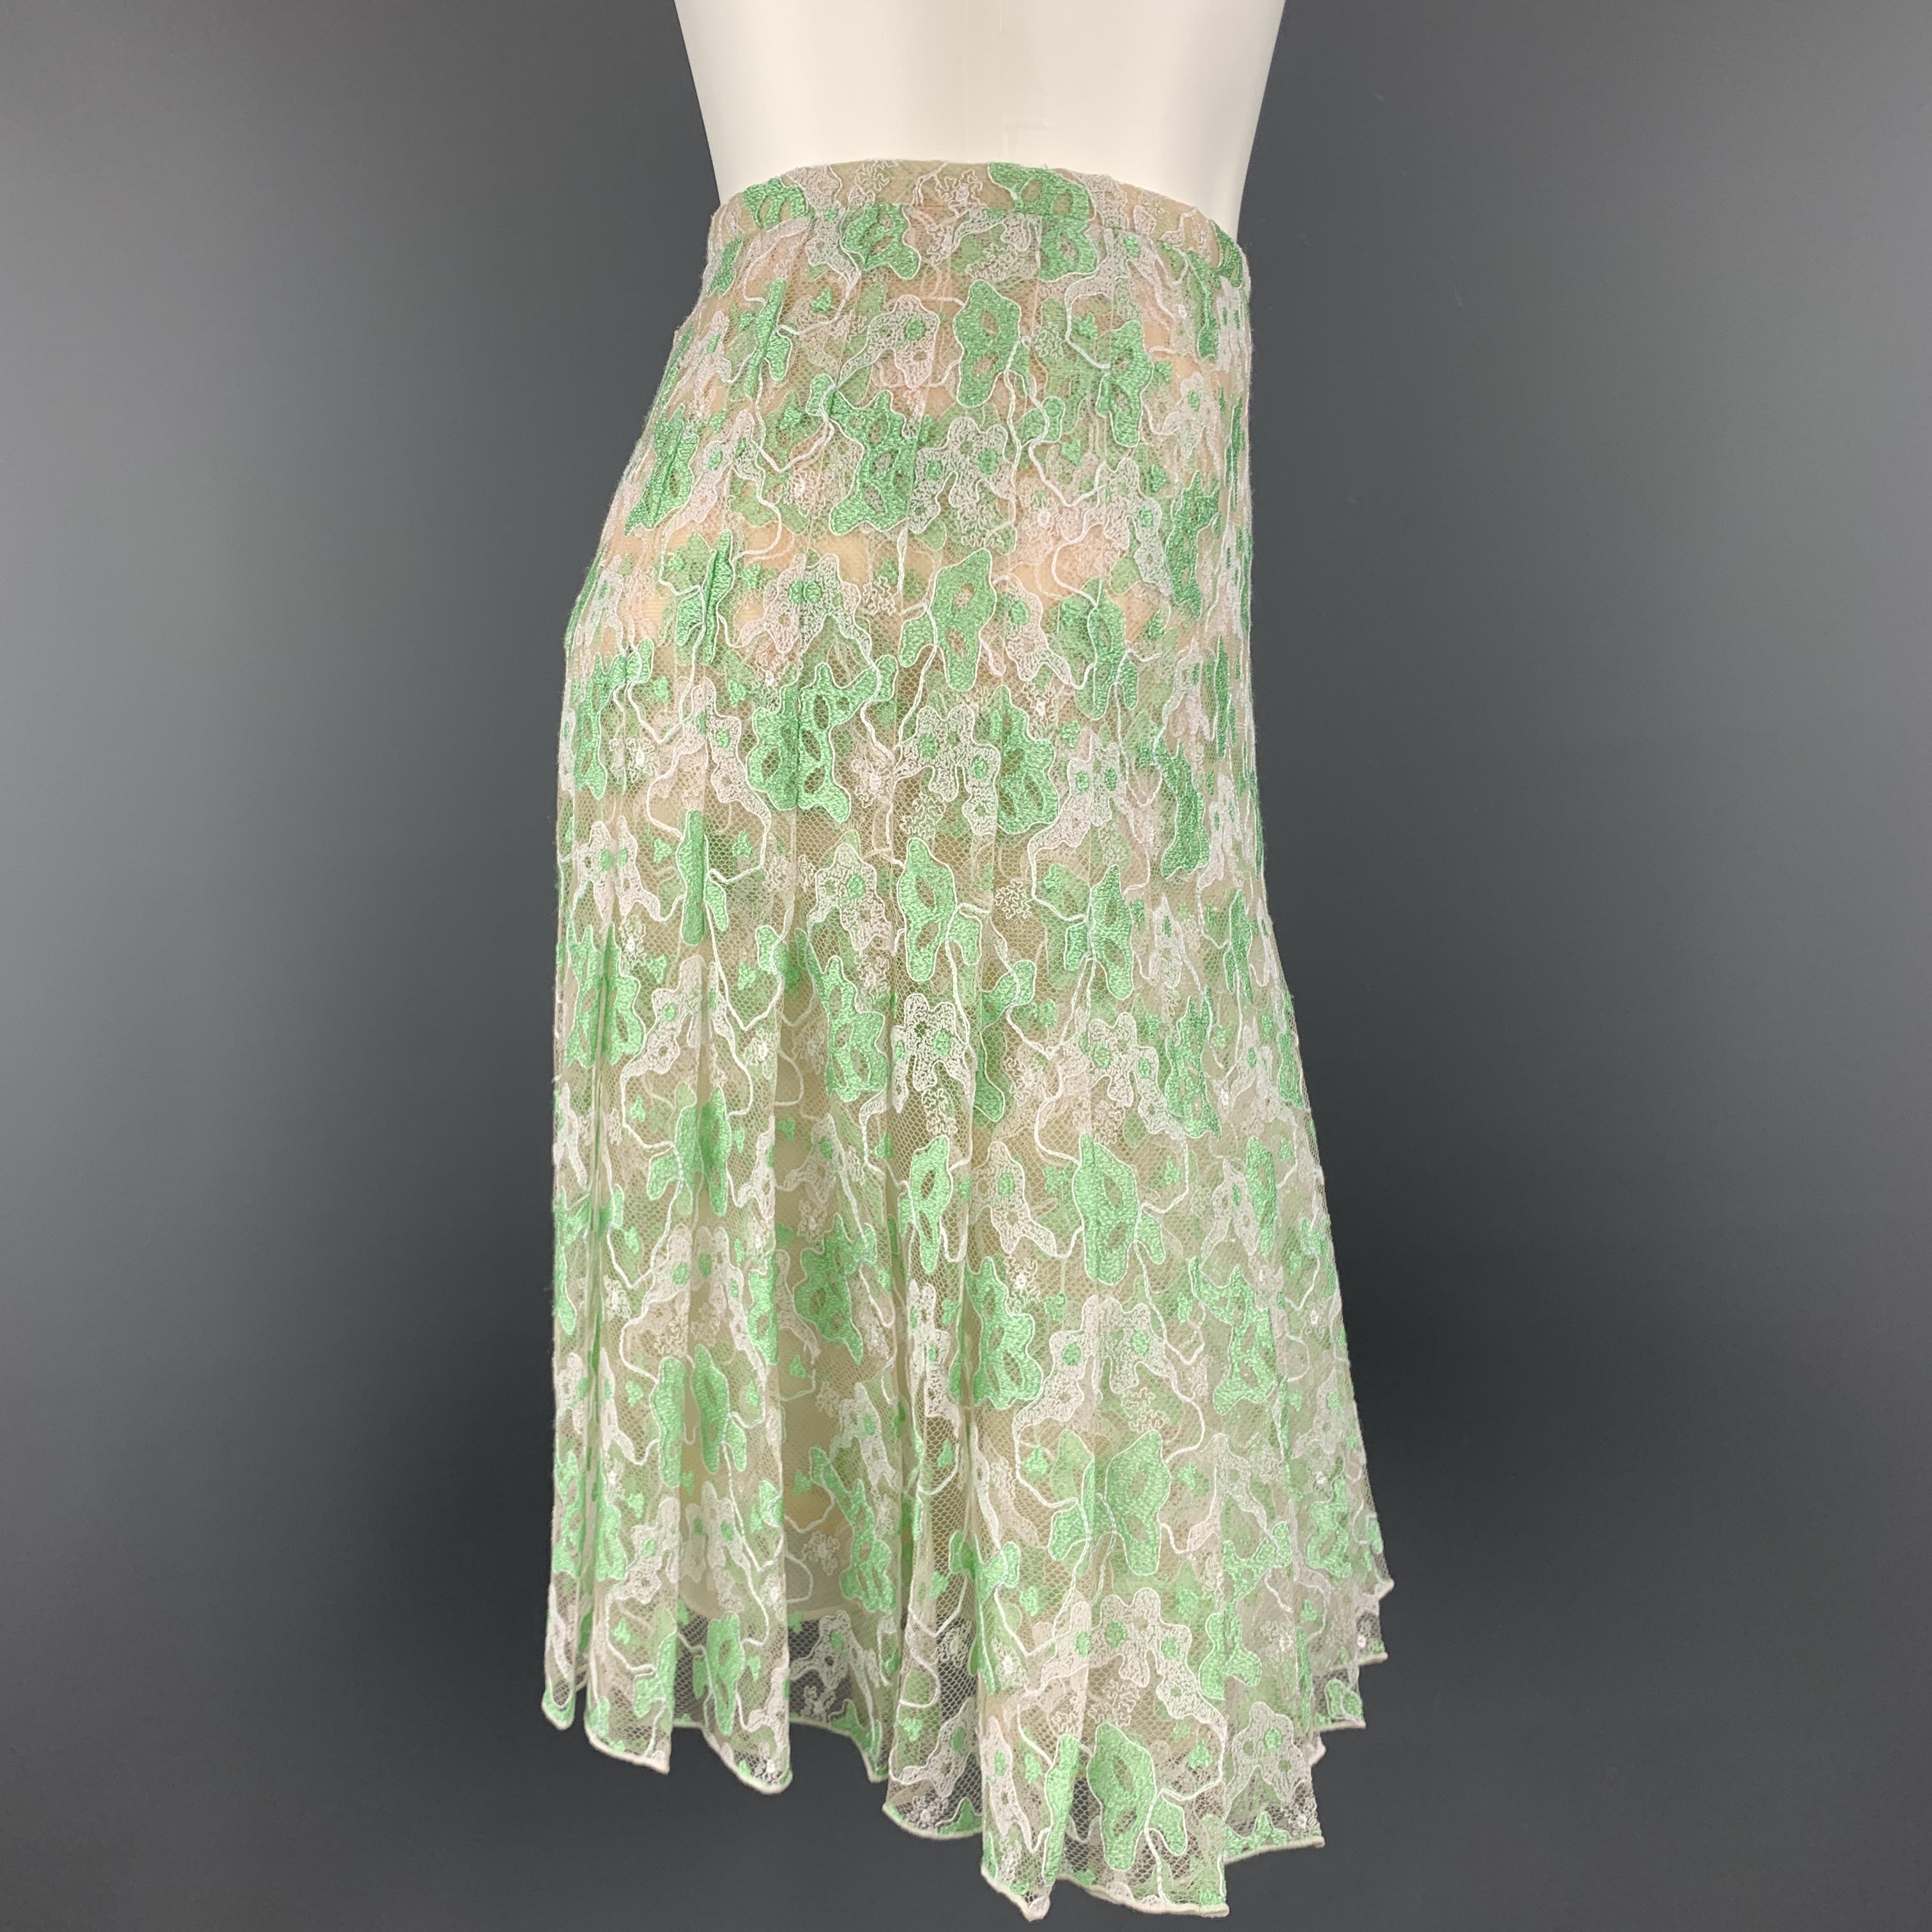 Beige CHRISTOPHER KANE Size 6 White & Green PLeated Silk Skirt